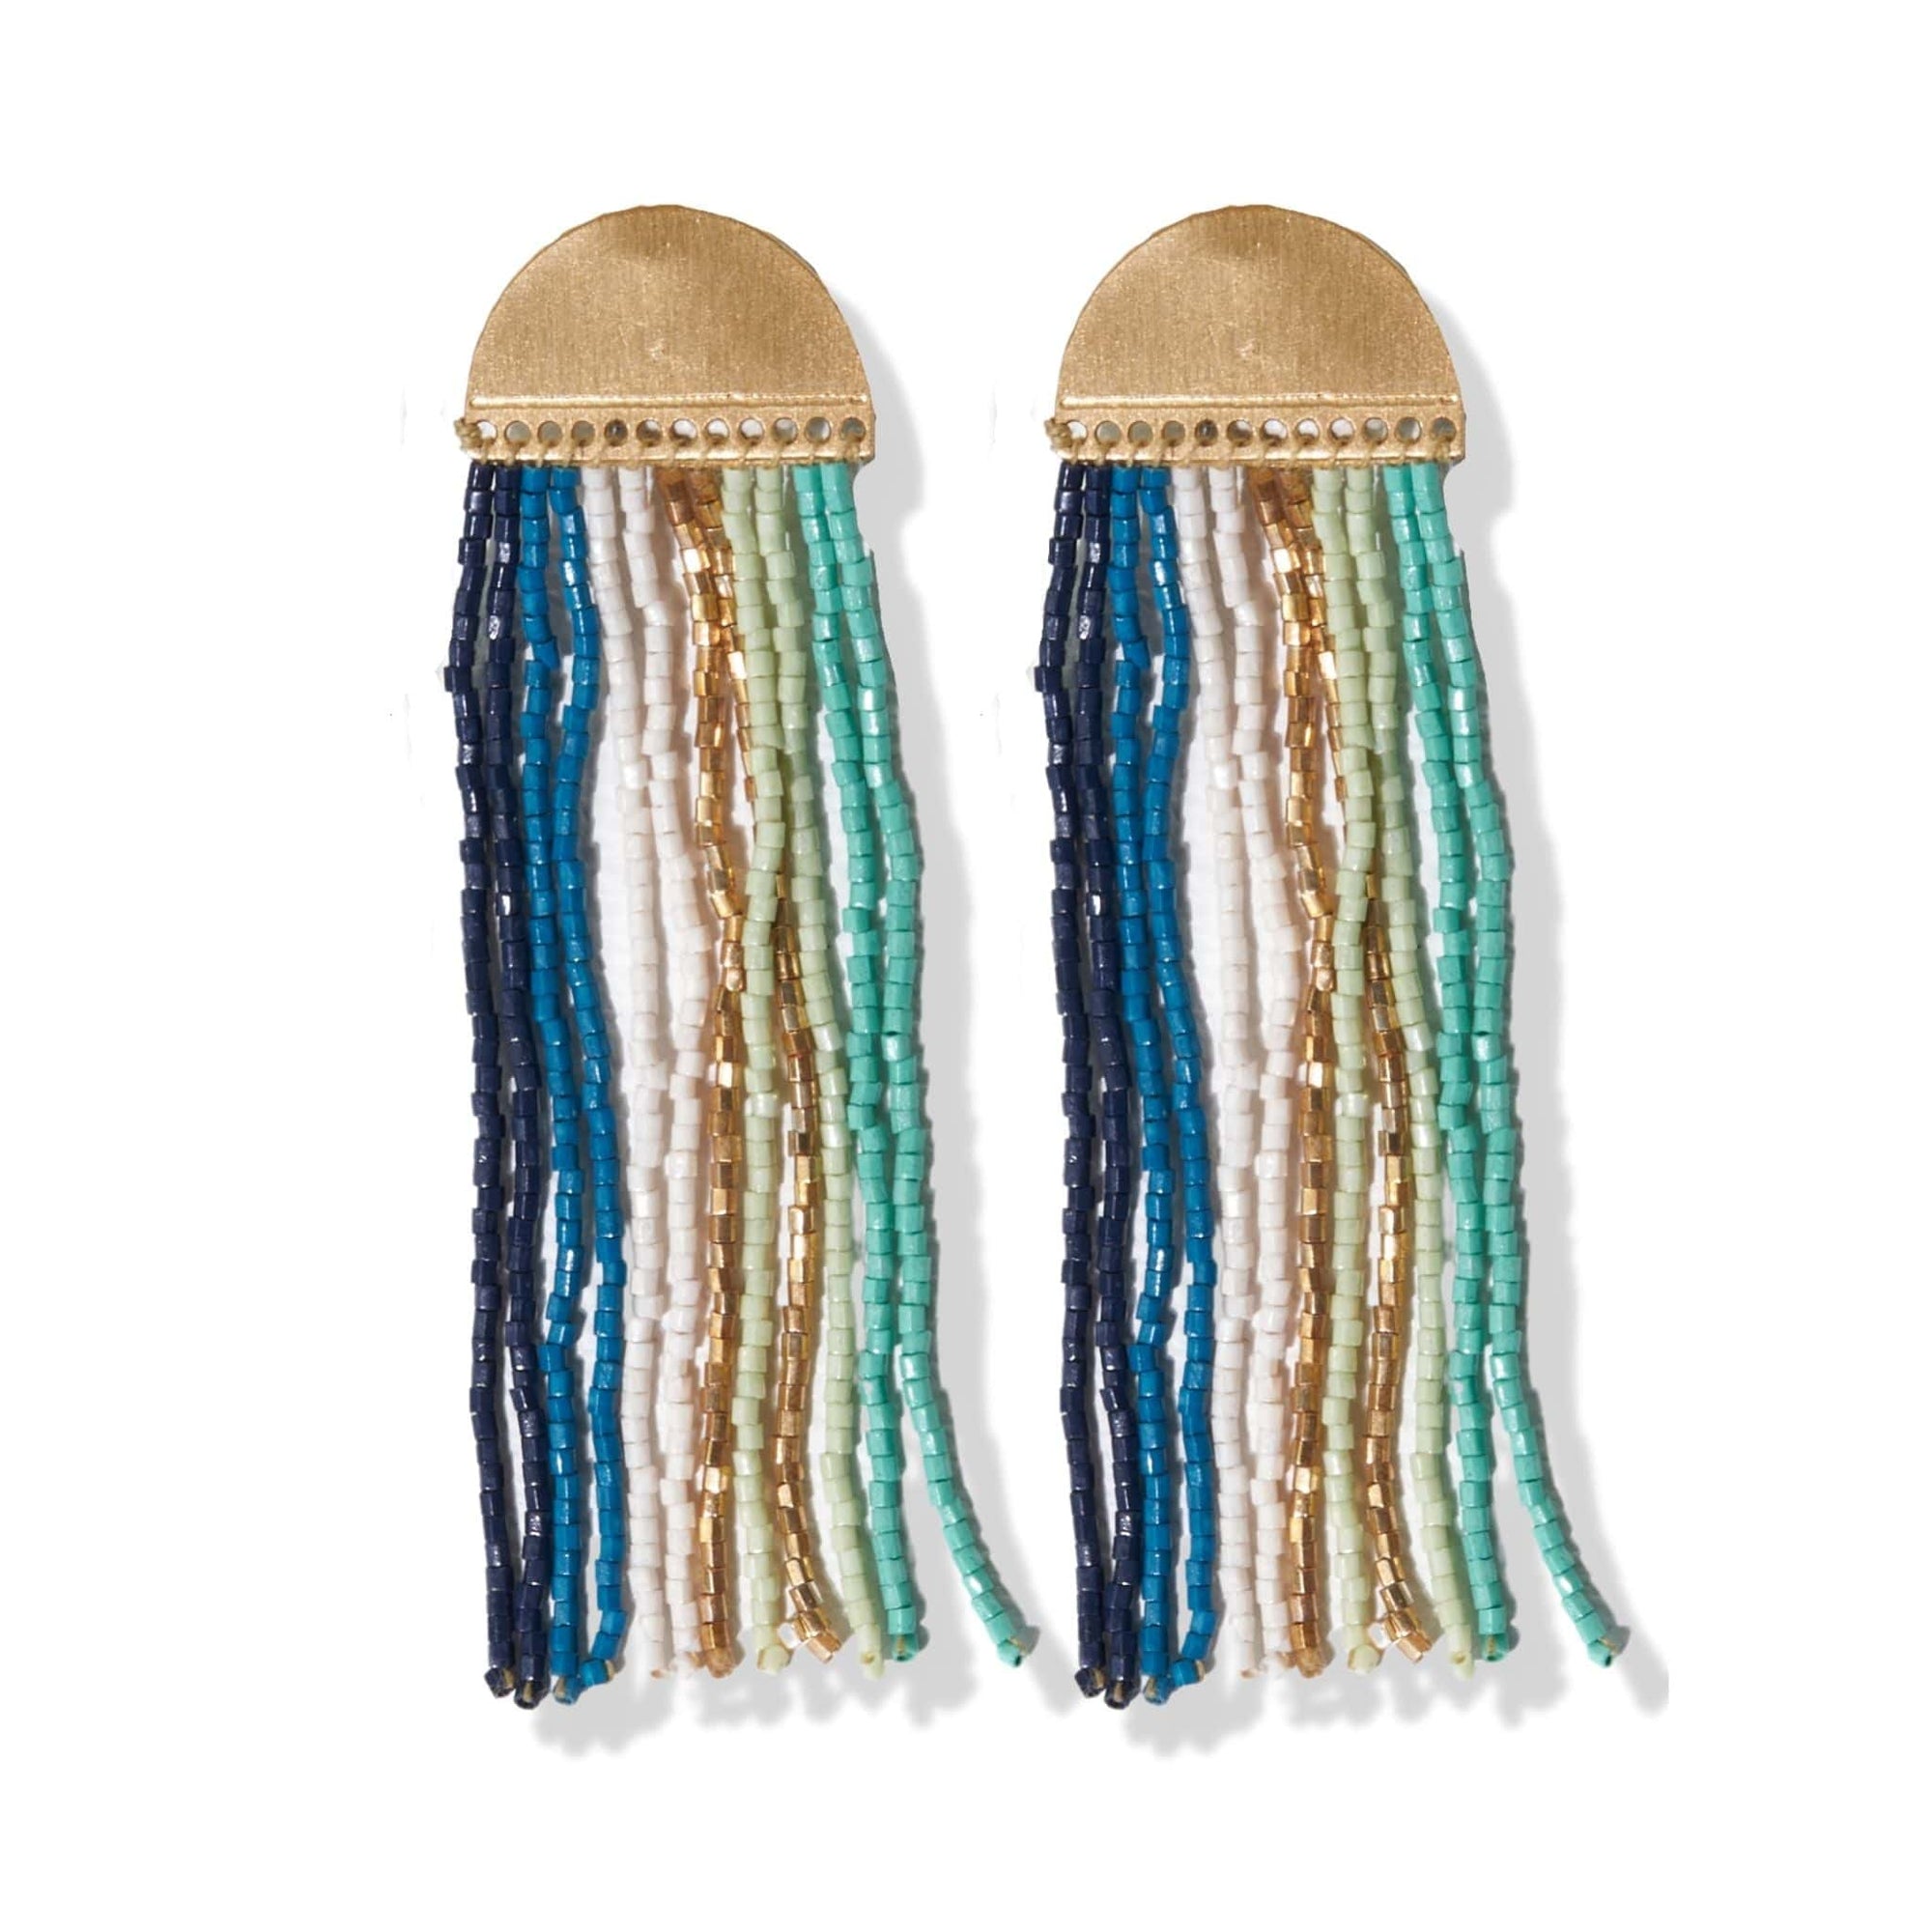 Riley Vertical Striped Earrings Teal Wholesale